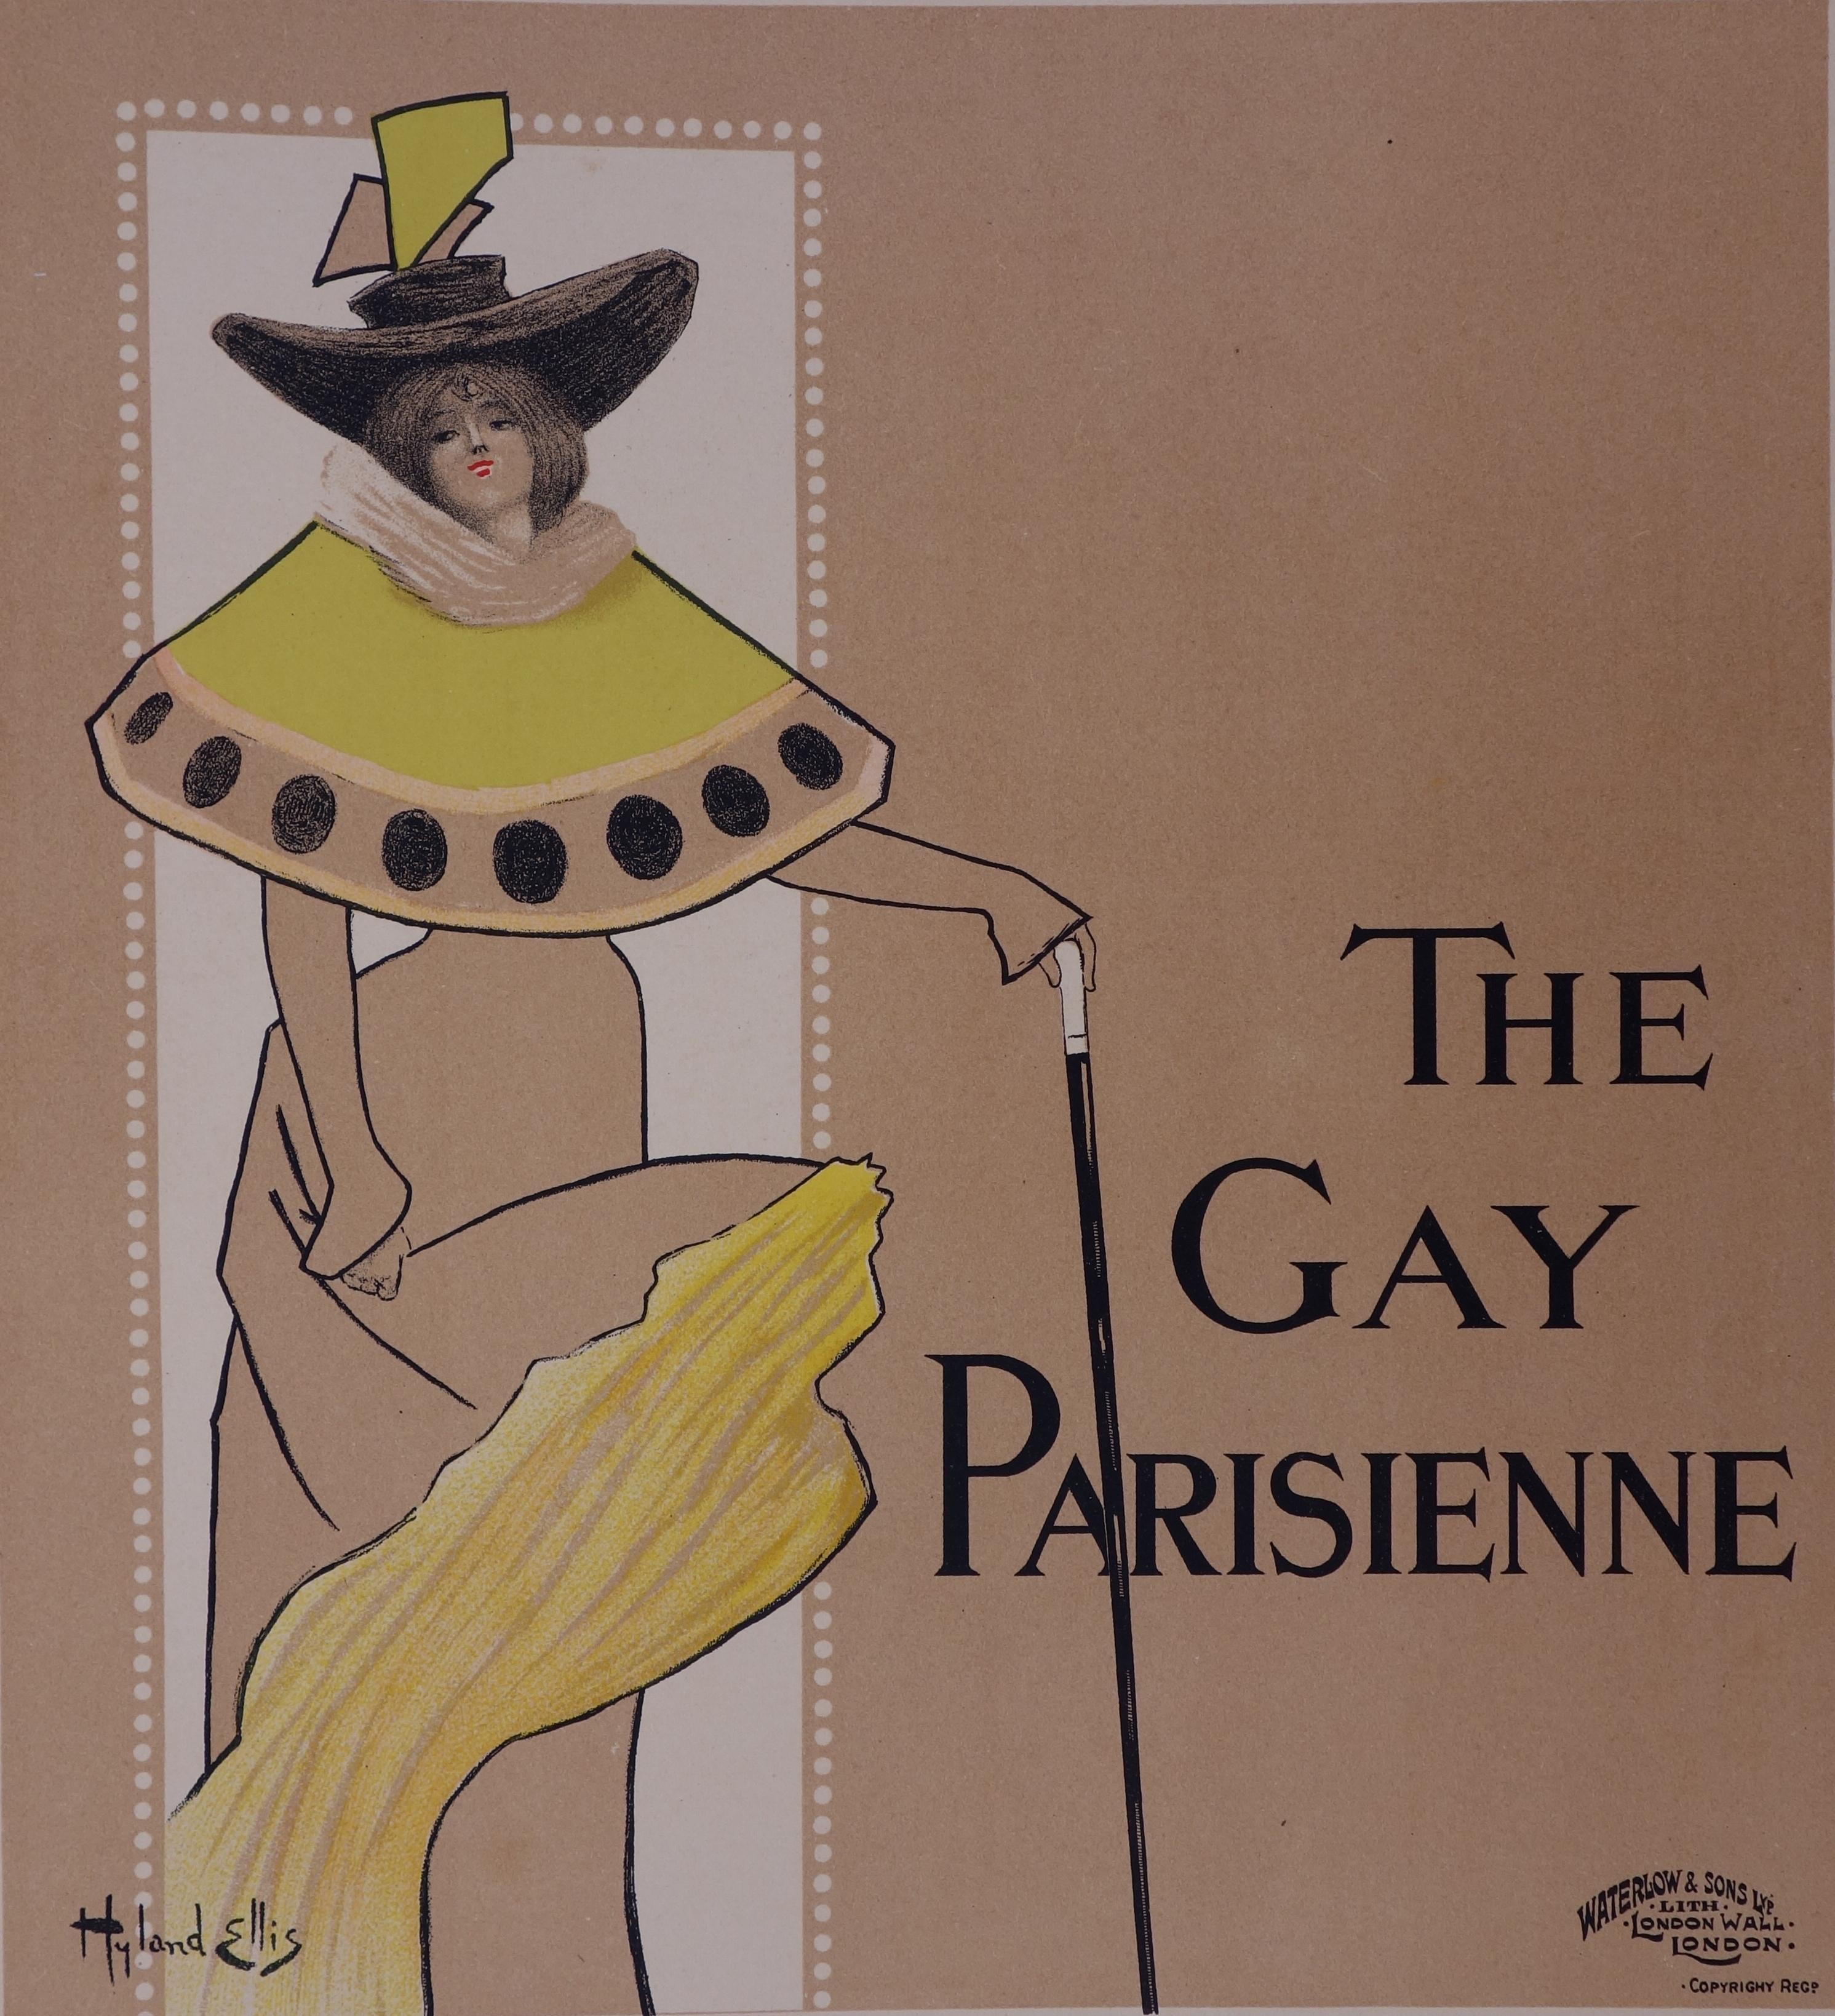 Hyland Ellis Figurative Print - The Gay Parisienne - Lithograph (Les Maîtres de l'Affiche), 1897